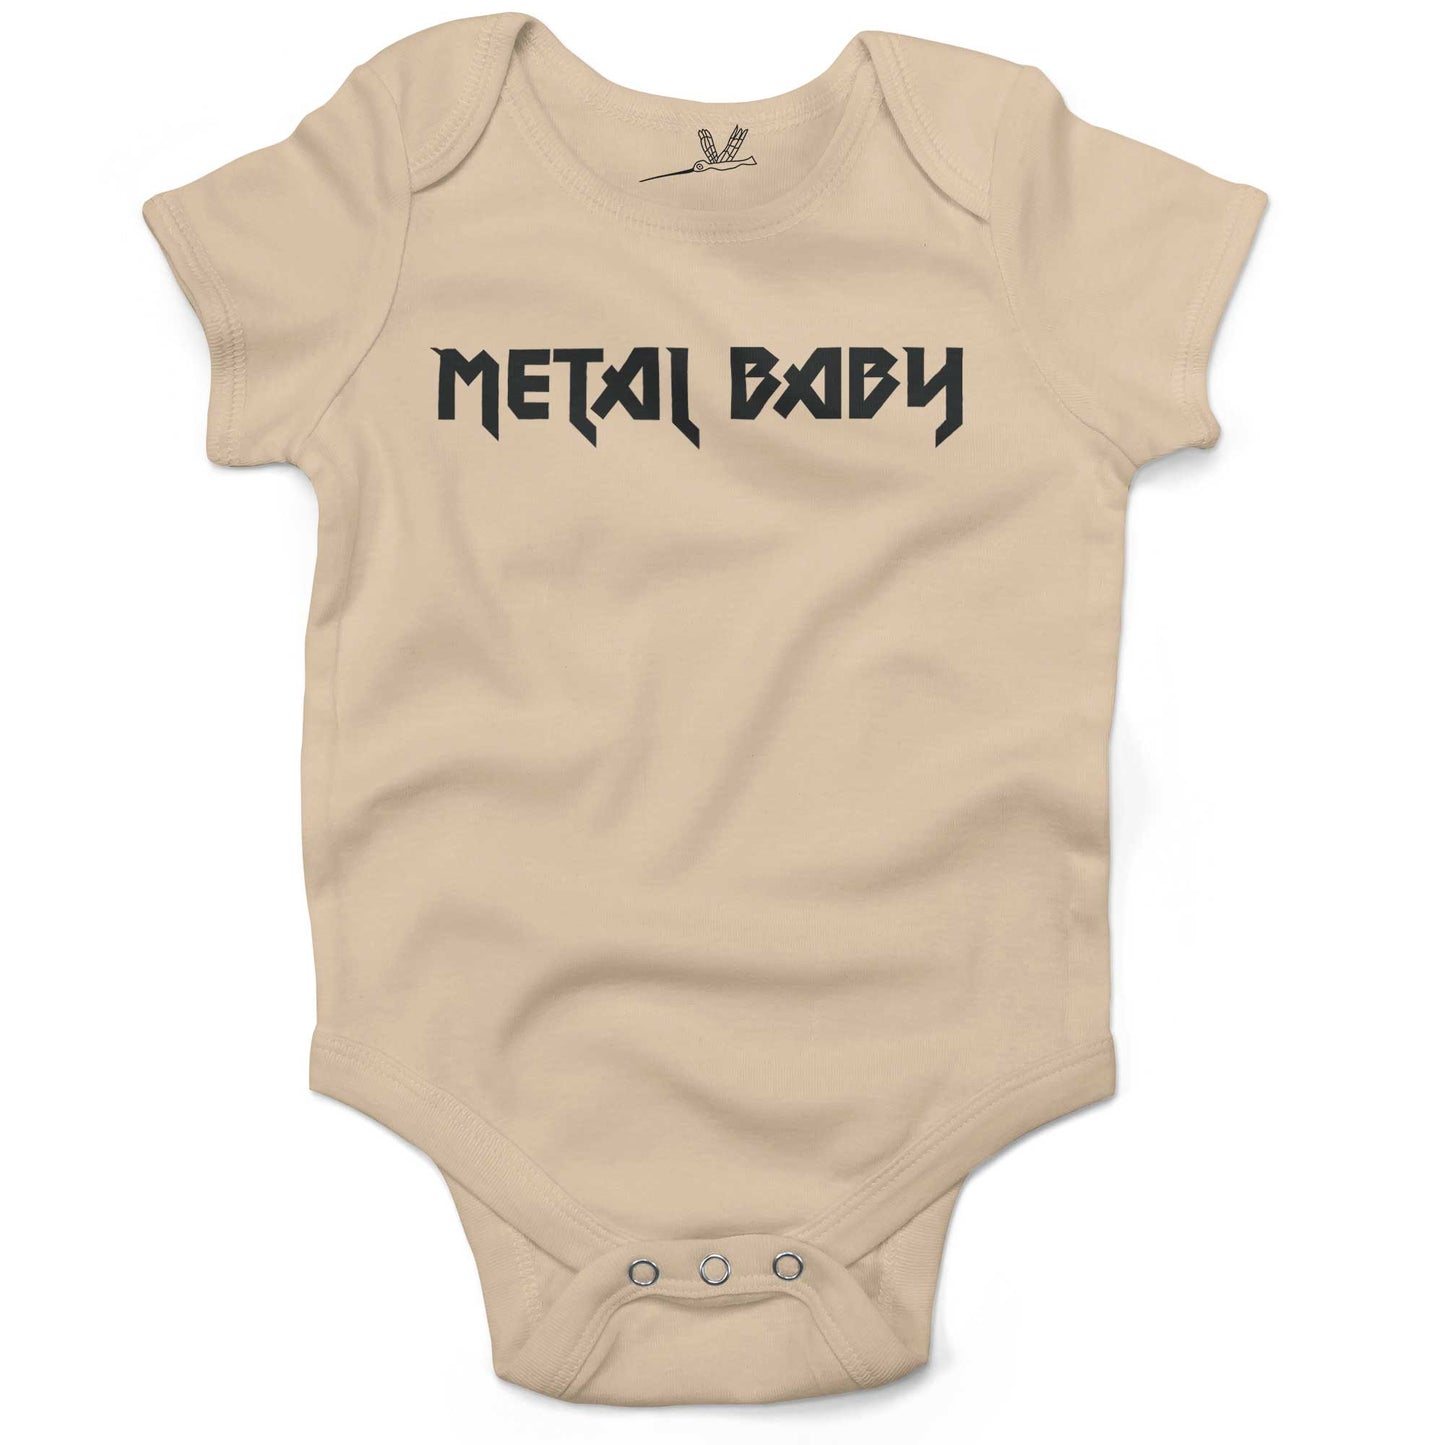 Metal Baby Infant Bodysuit or Raglan Baby Tee-Organic Natural-3-6 months